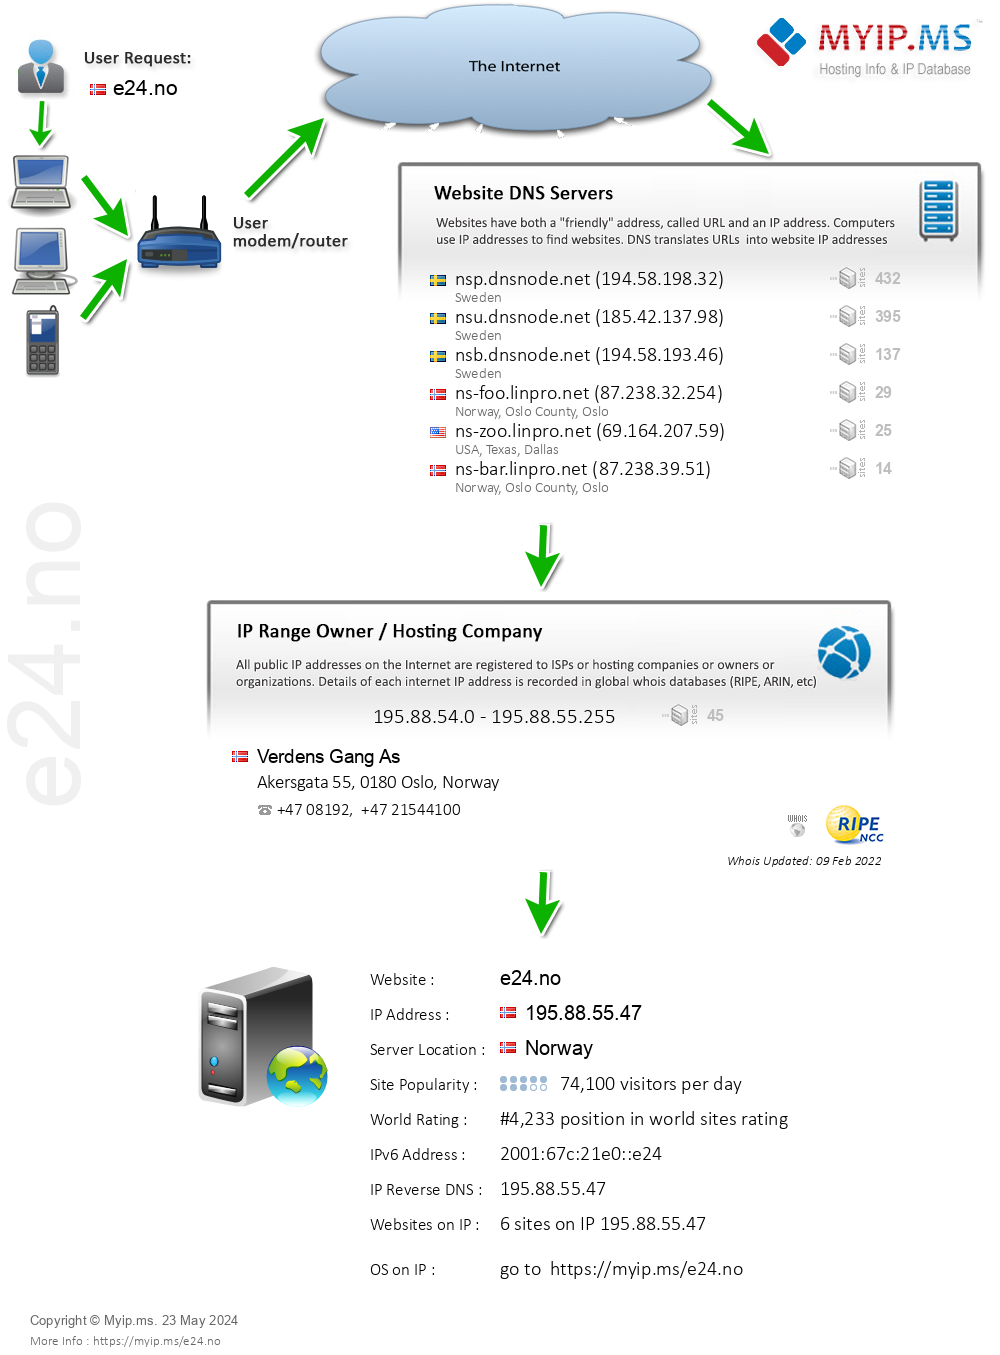 E24.no - Website Hosting Visual IP Diagram